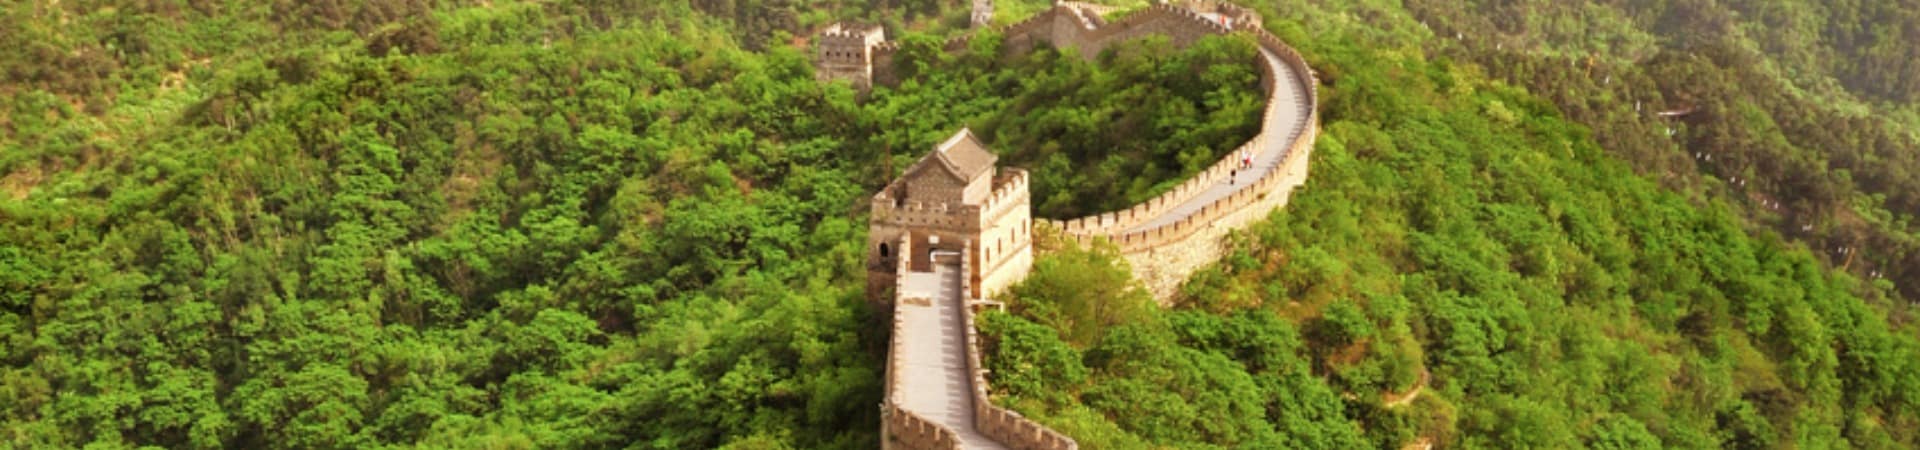 Atrativo turístico China Grande Muralha